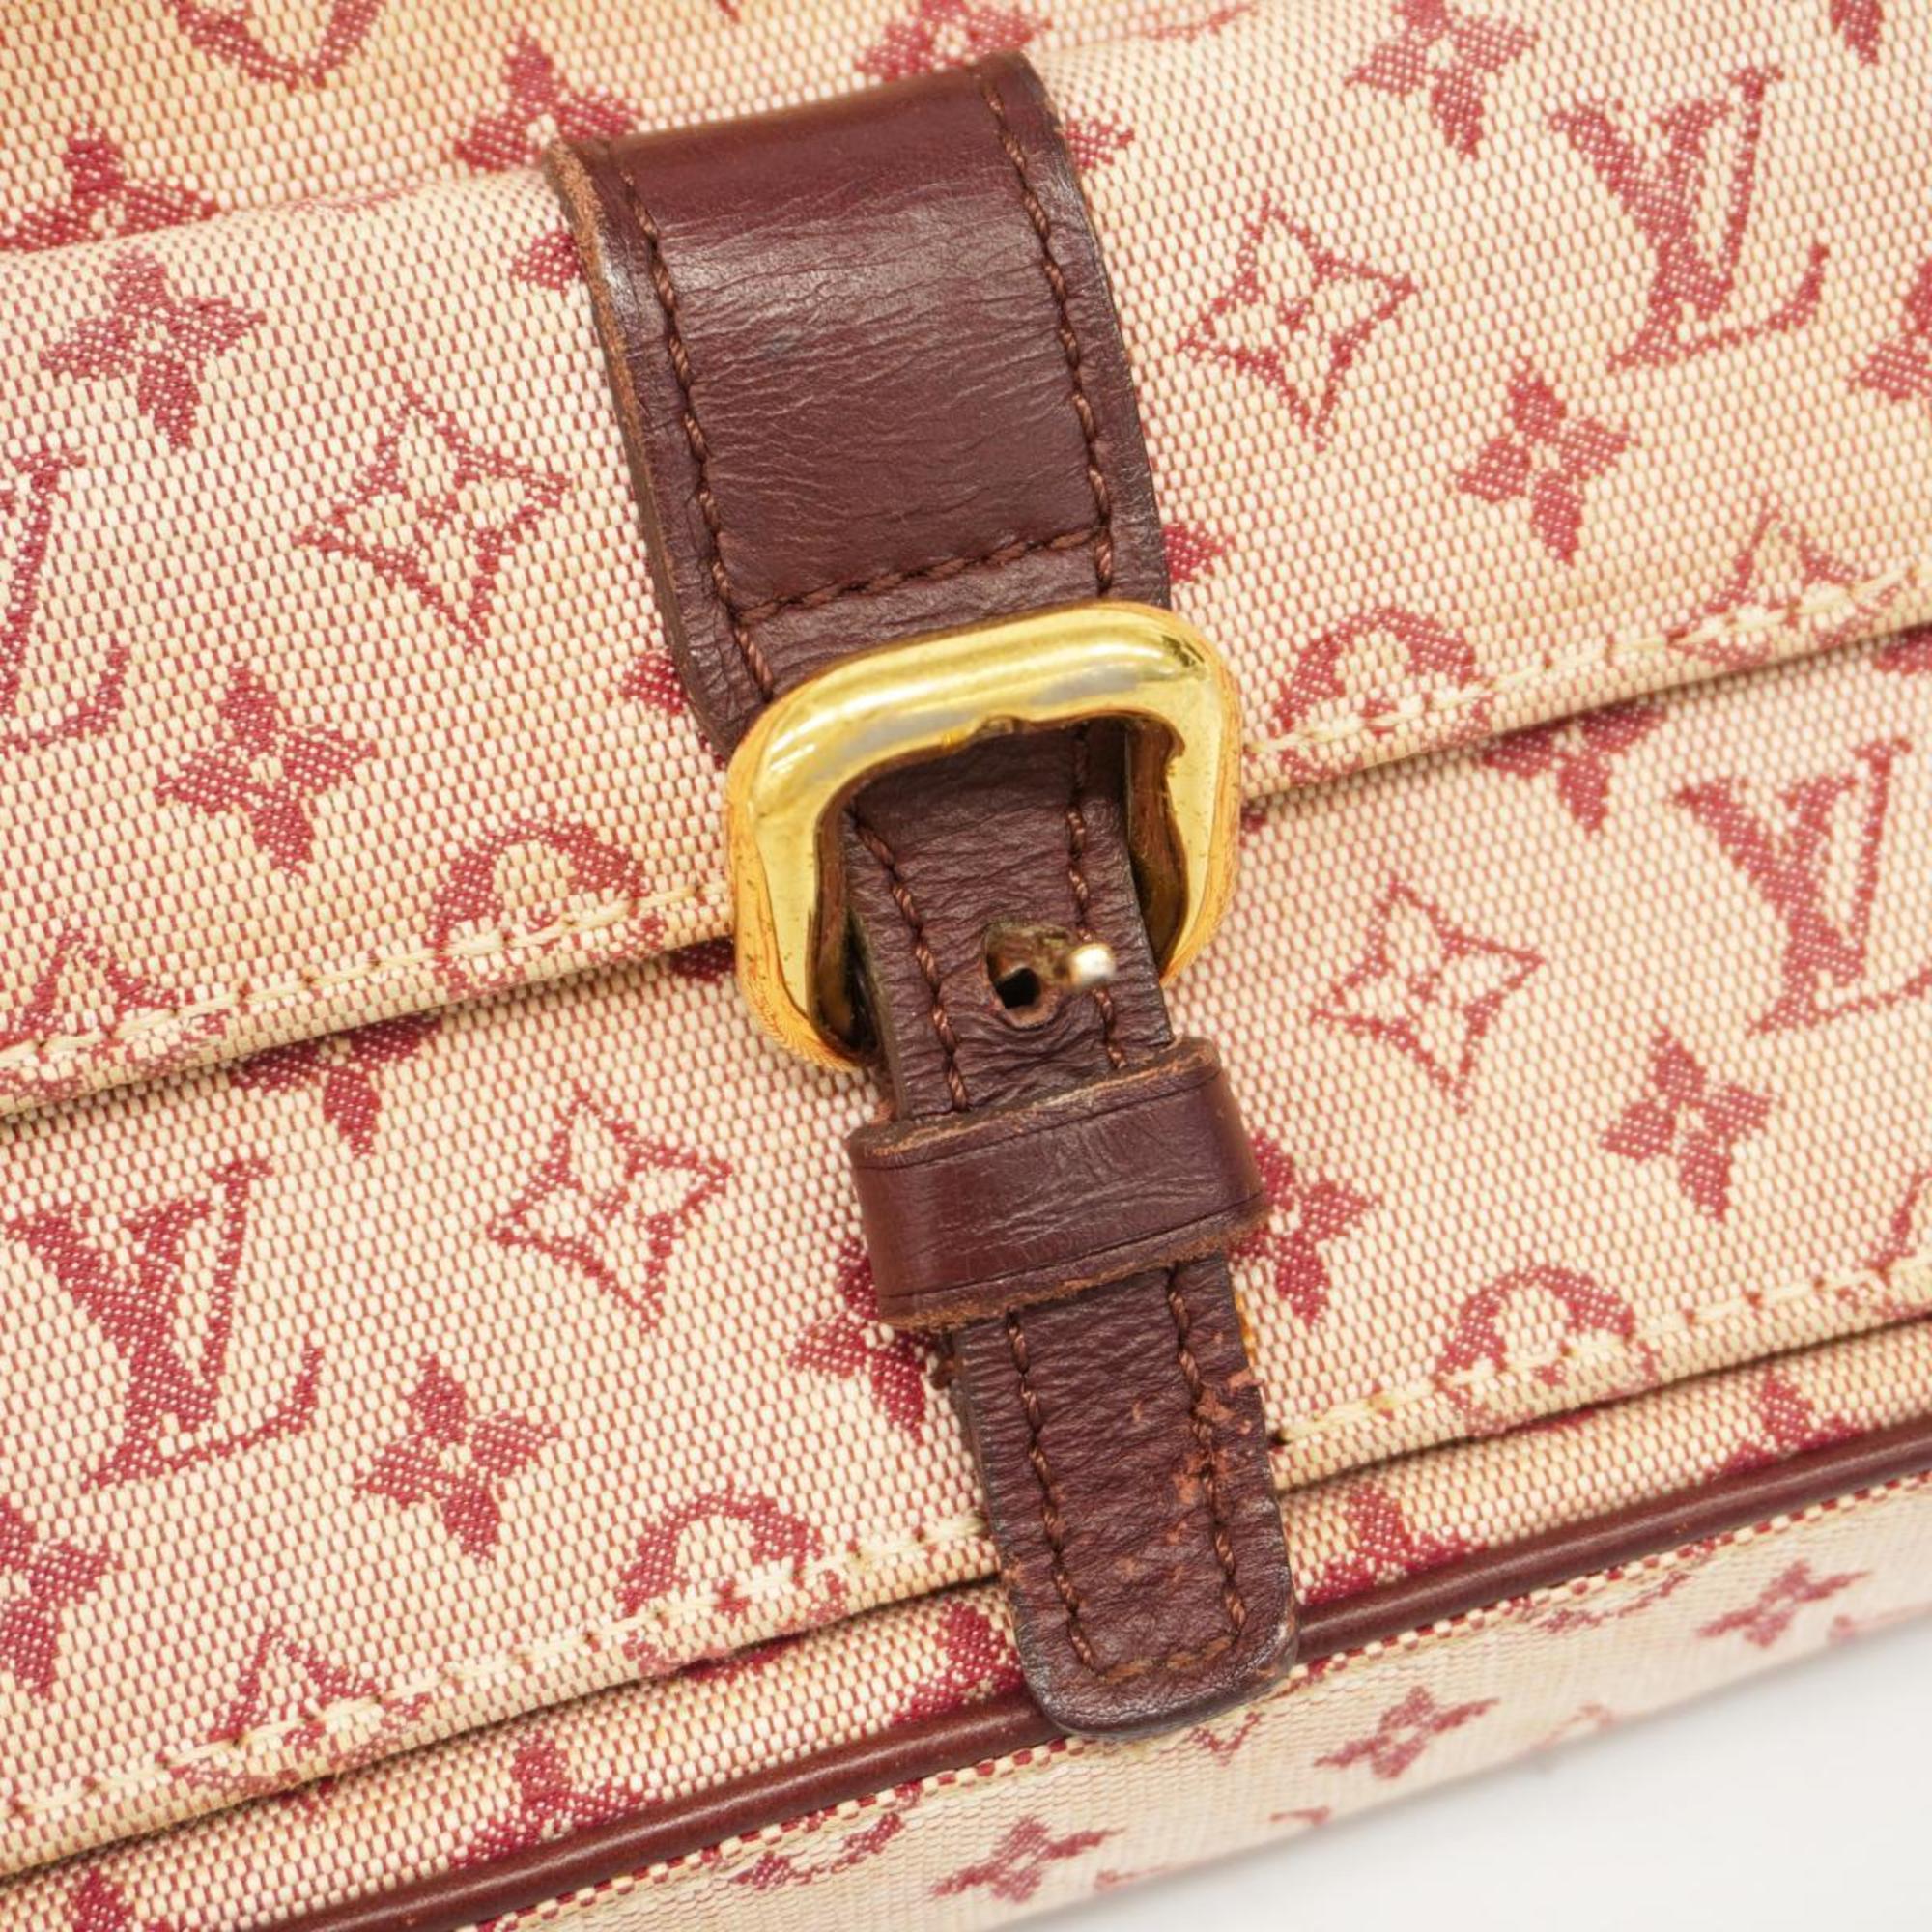 Louis Vuitton Shoulder Bag Monogram Juliet M92219 Cherry Ladies